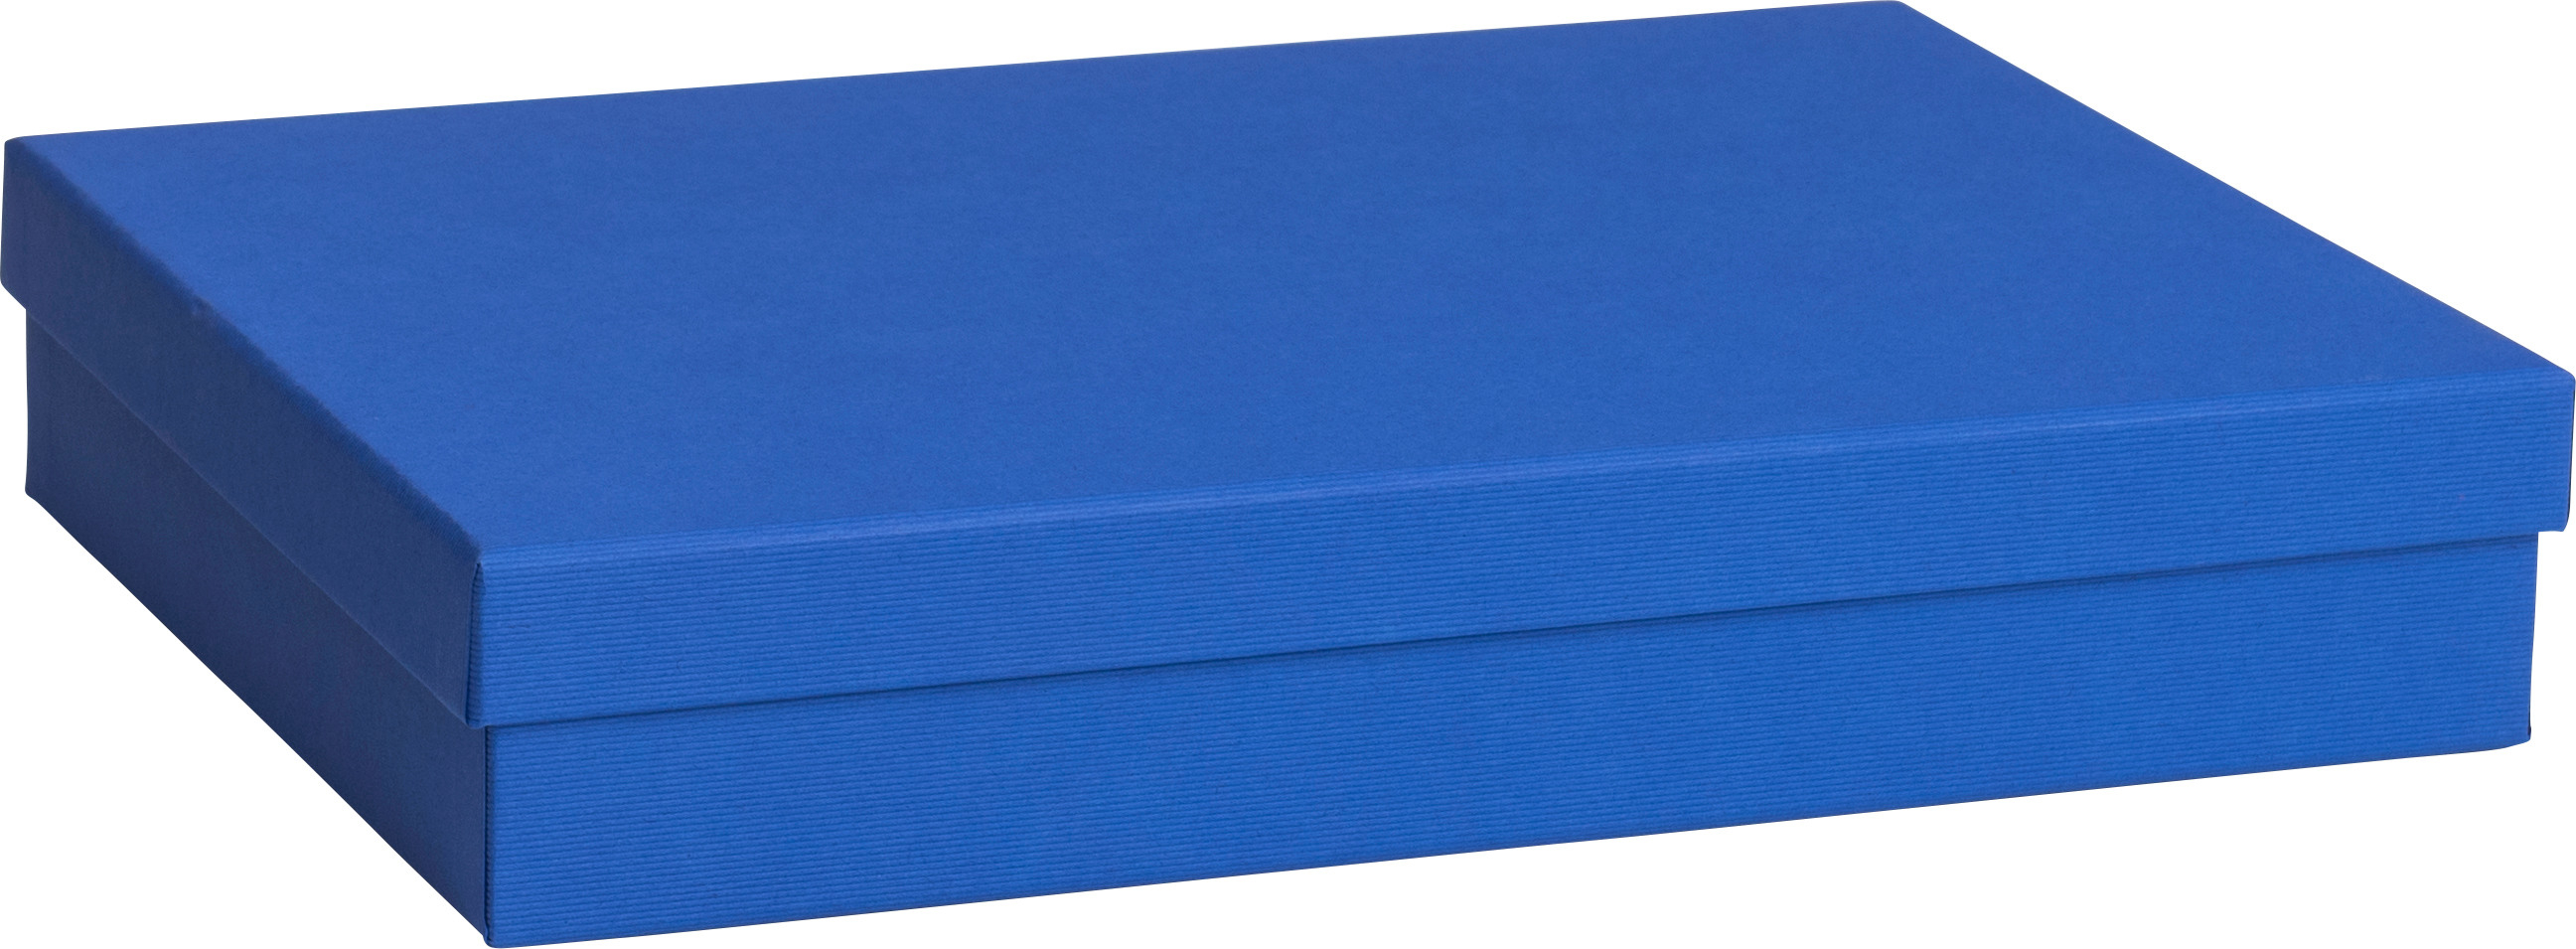 STEWO Geschenkbox One Colour 2551782993 blau dunkel 24x33x6cm